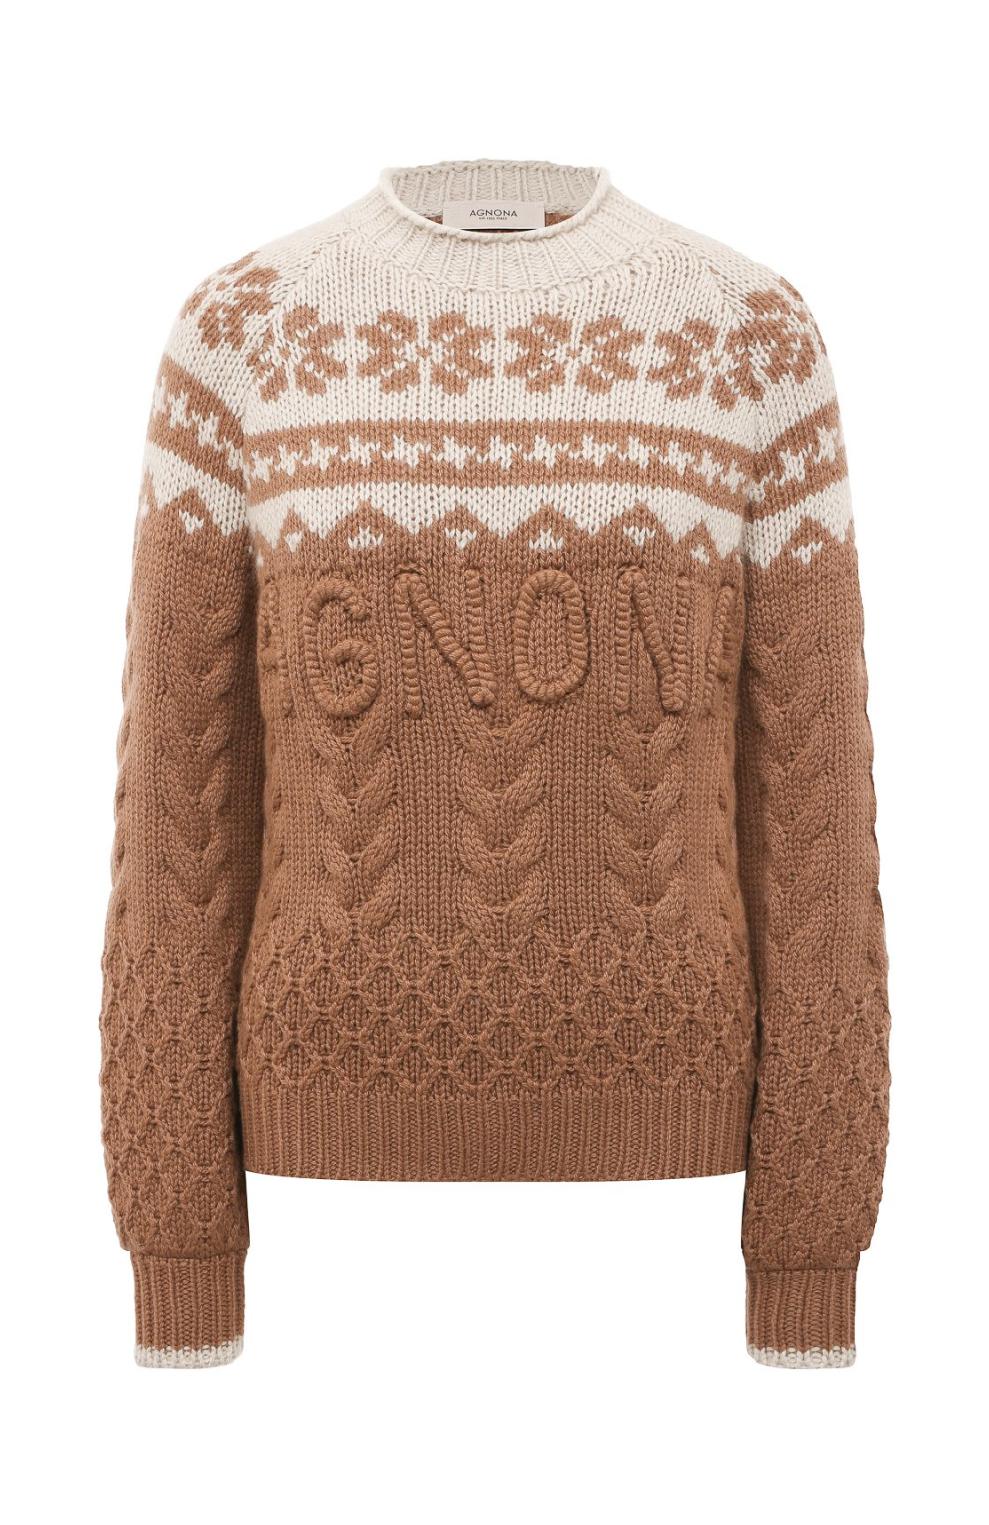 Кашемировый свитер, Agnona, 258 500 руб.